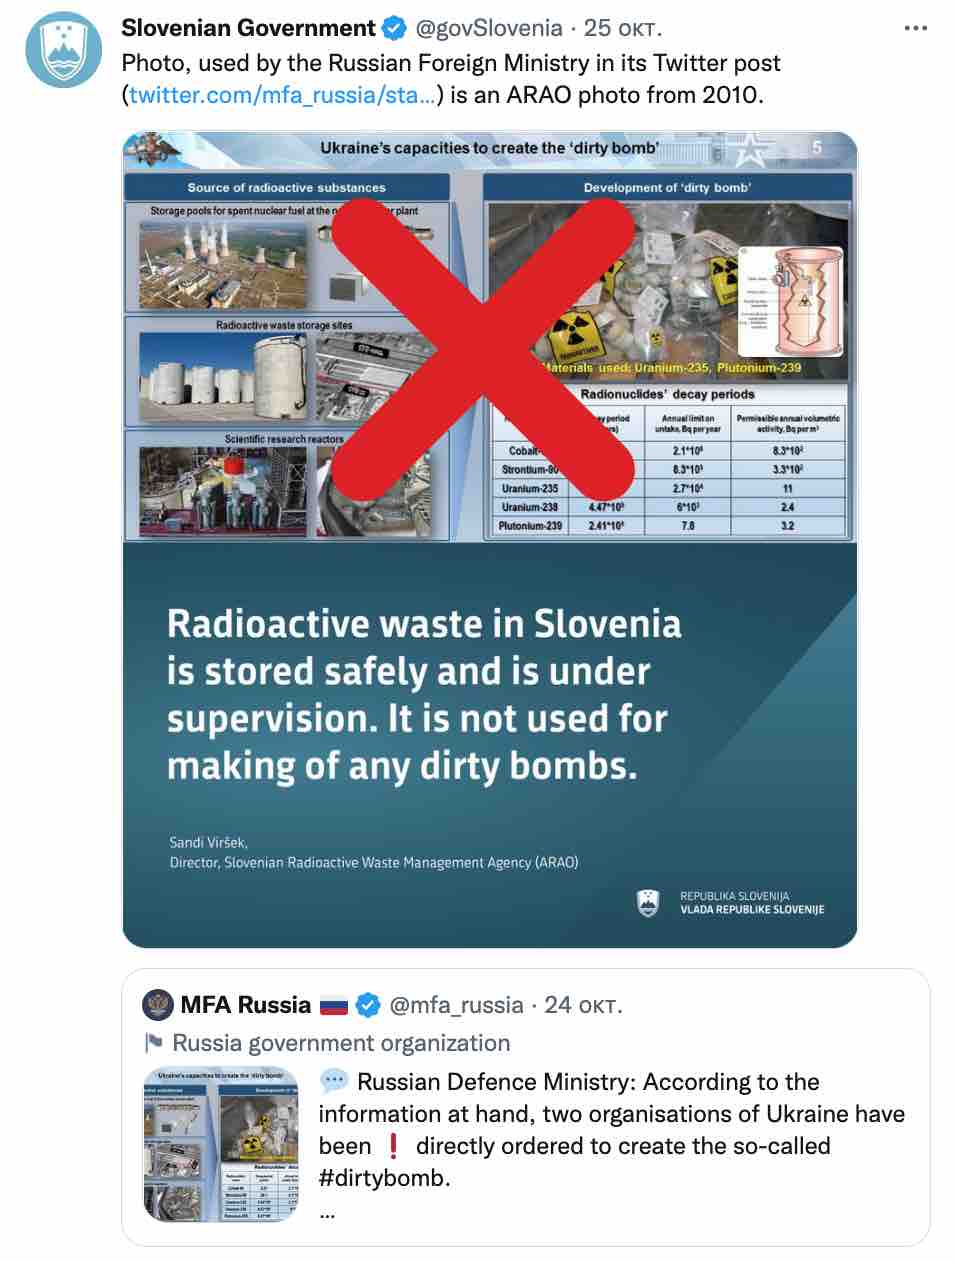 МИД РФ в твите о якобы создании Украиной "грязной бомбы" использовал фото 2010 года